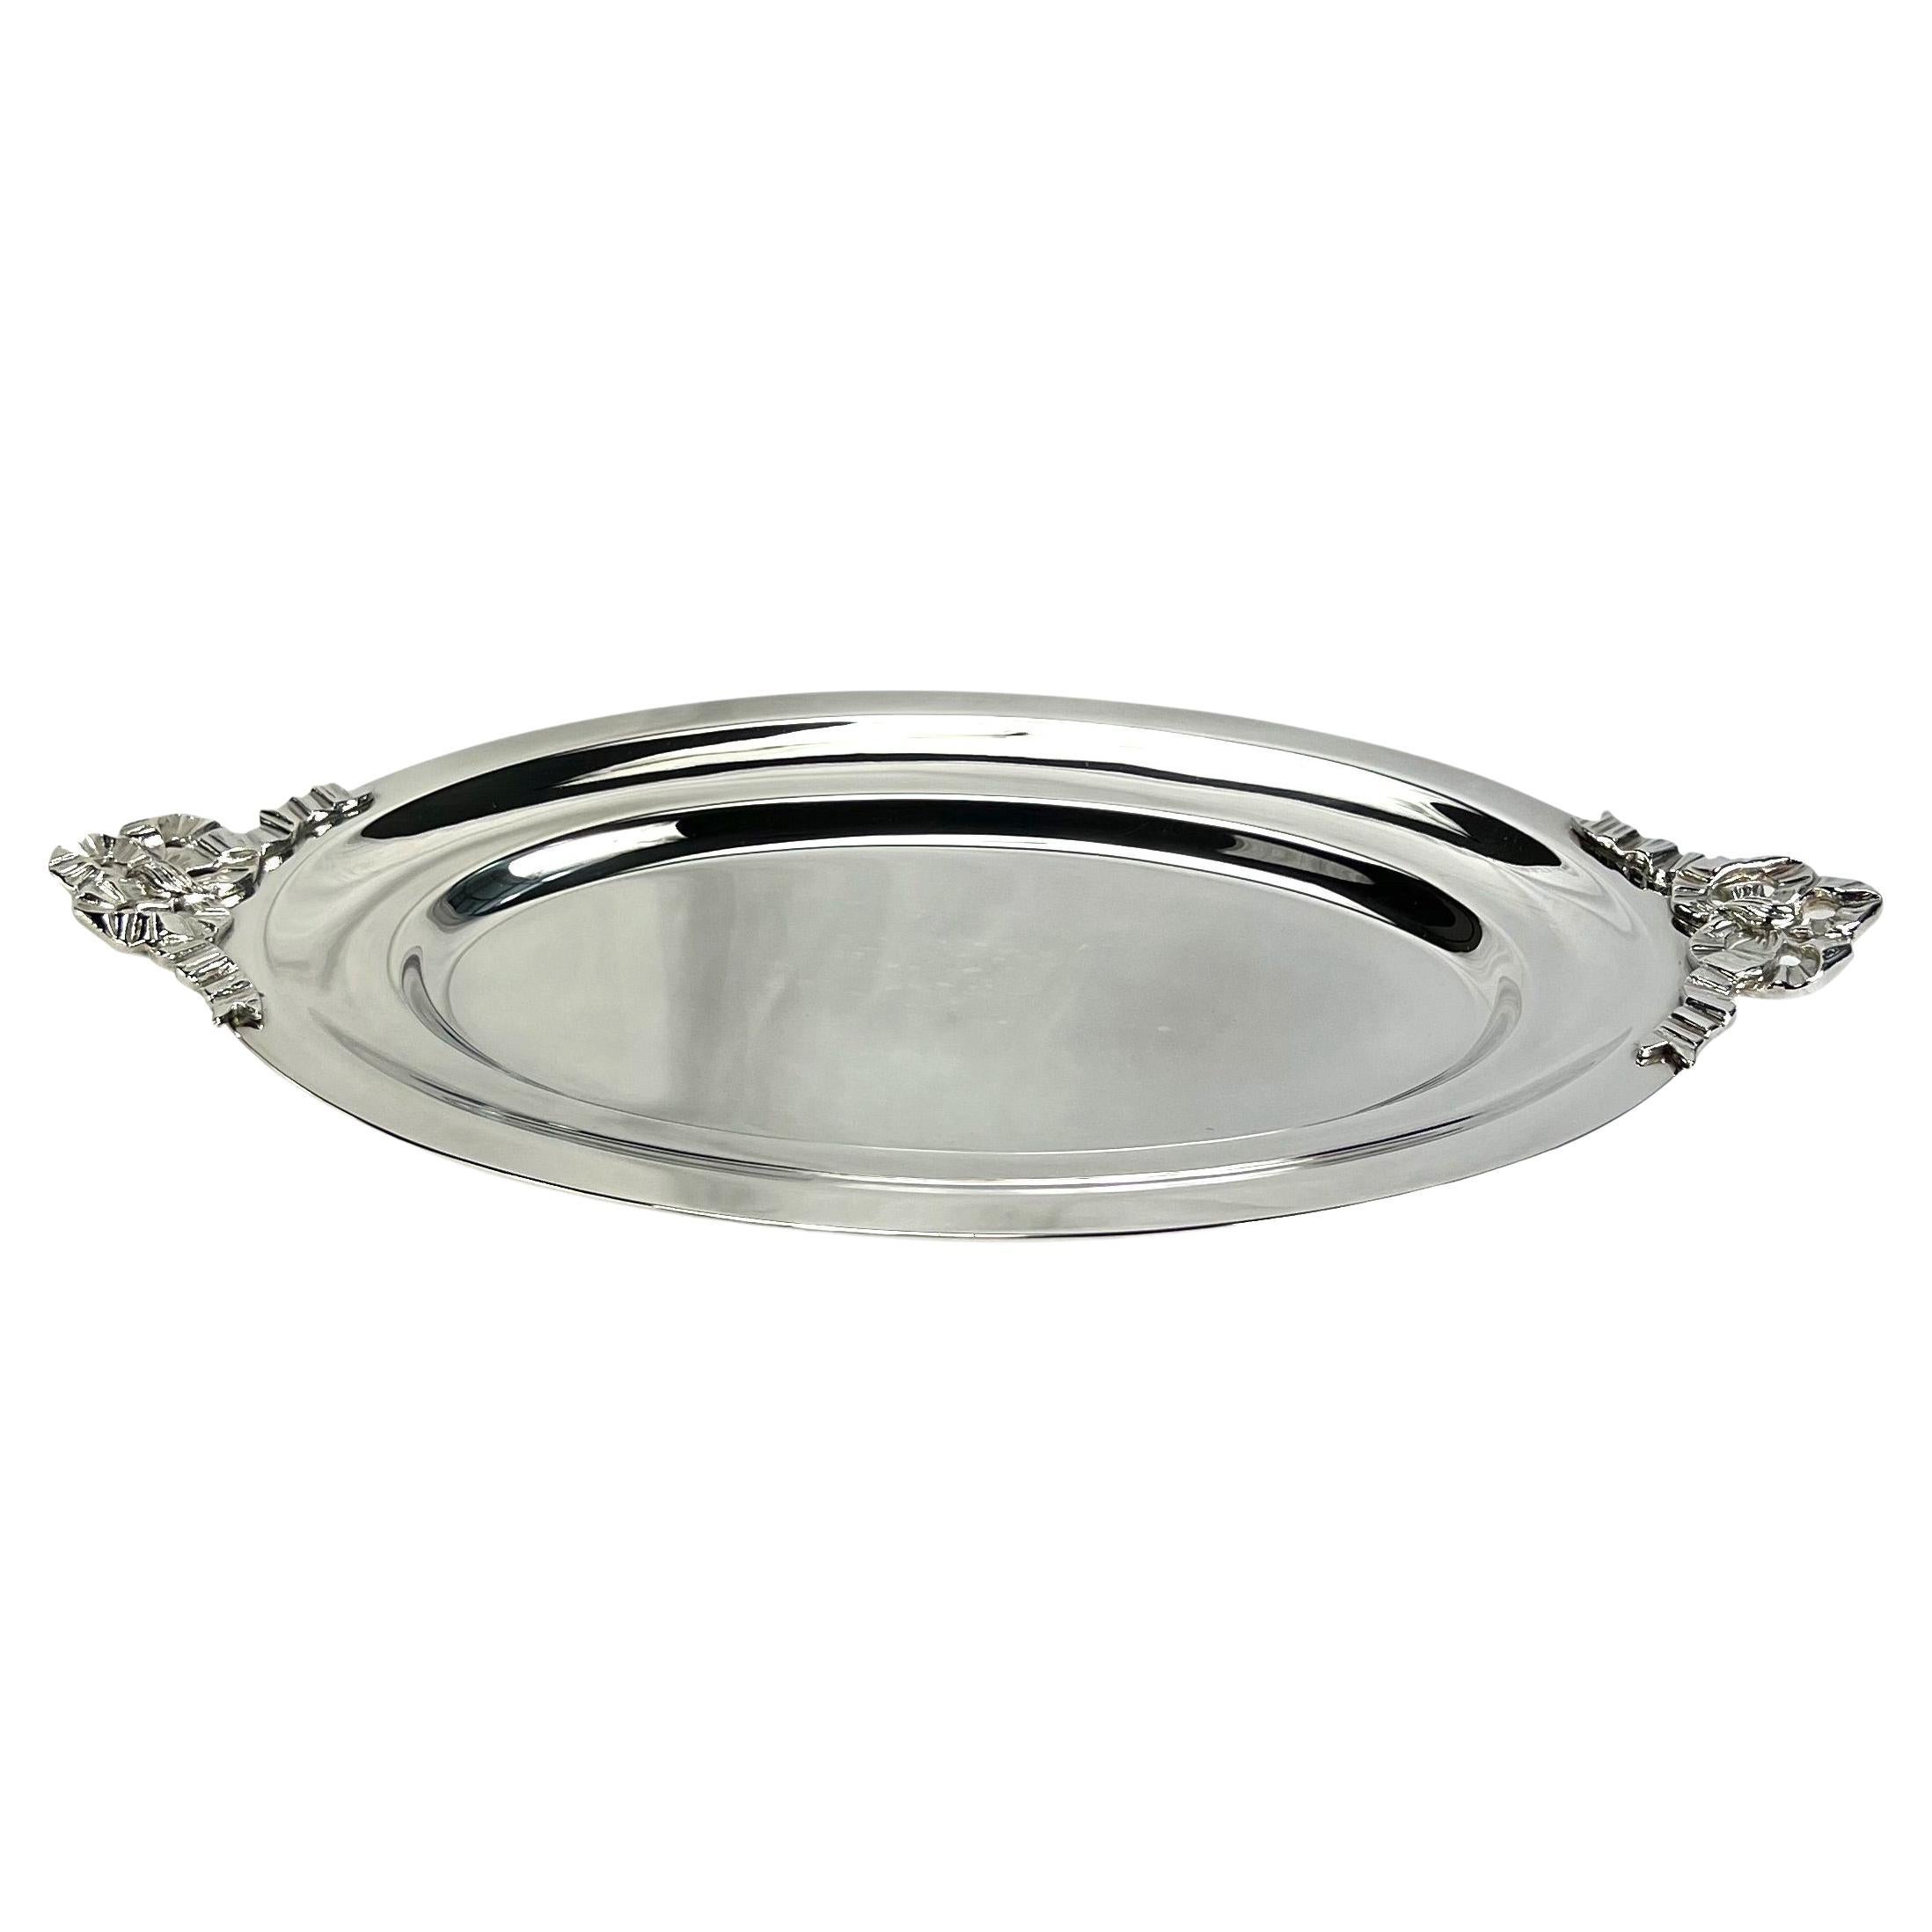 Christian Dior Silver-Plate Ribbon Accented Vintage Decorative Serving Plate (Assiette de service décorative vintage)